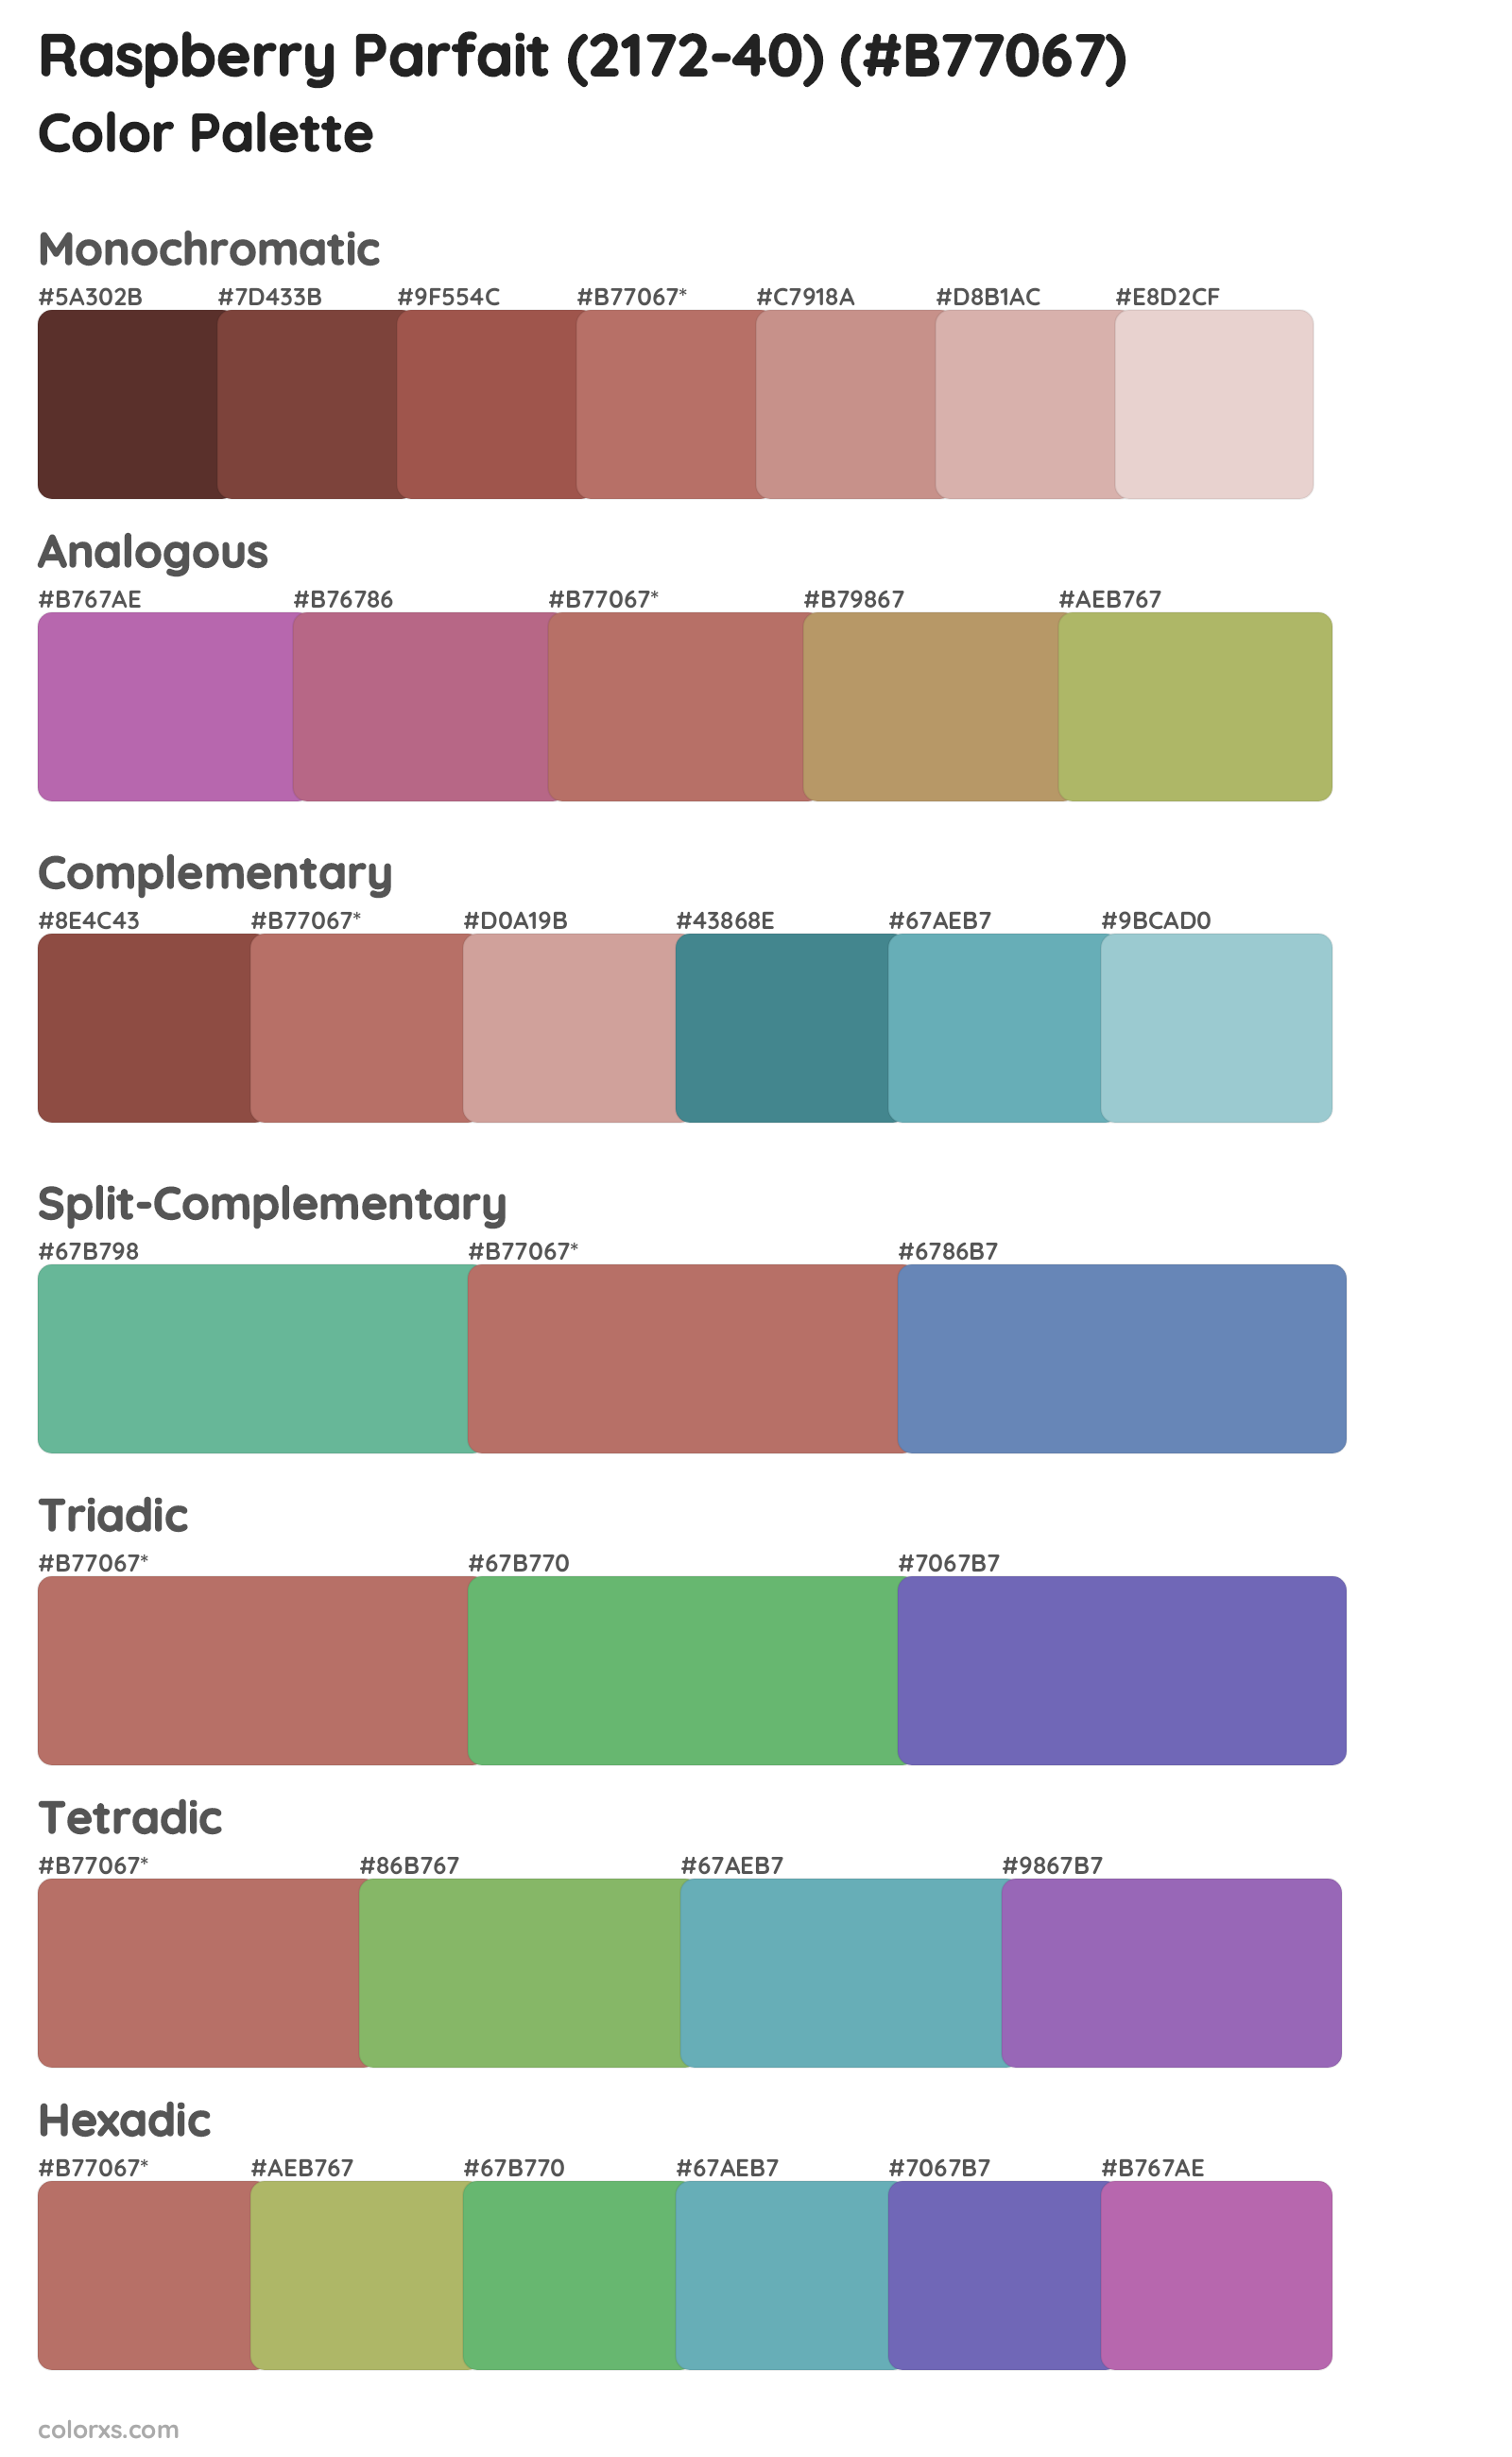 Raspberry Parfait (2172-40) Color Scheme Palettes